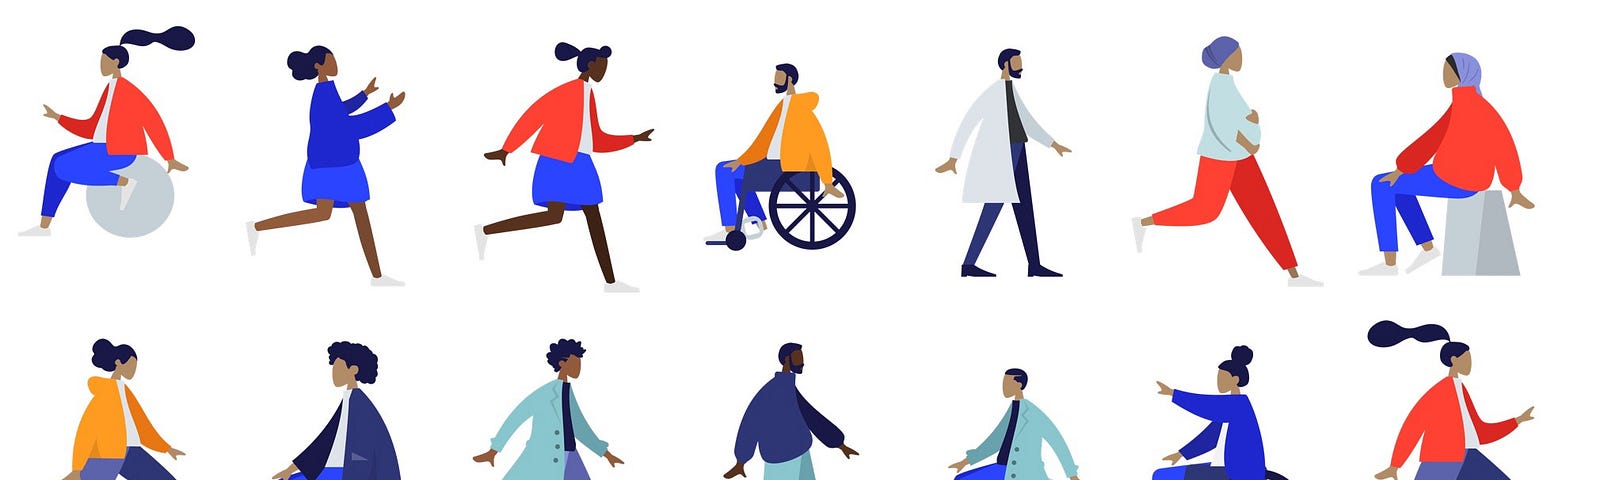 Ilustração com 14 pessoas em movimento de diferentes etnias. Imagem de https://www.humaaans.com/